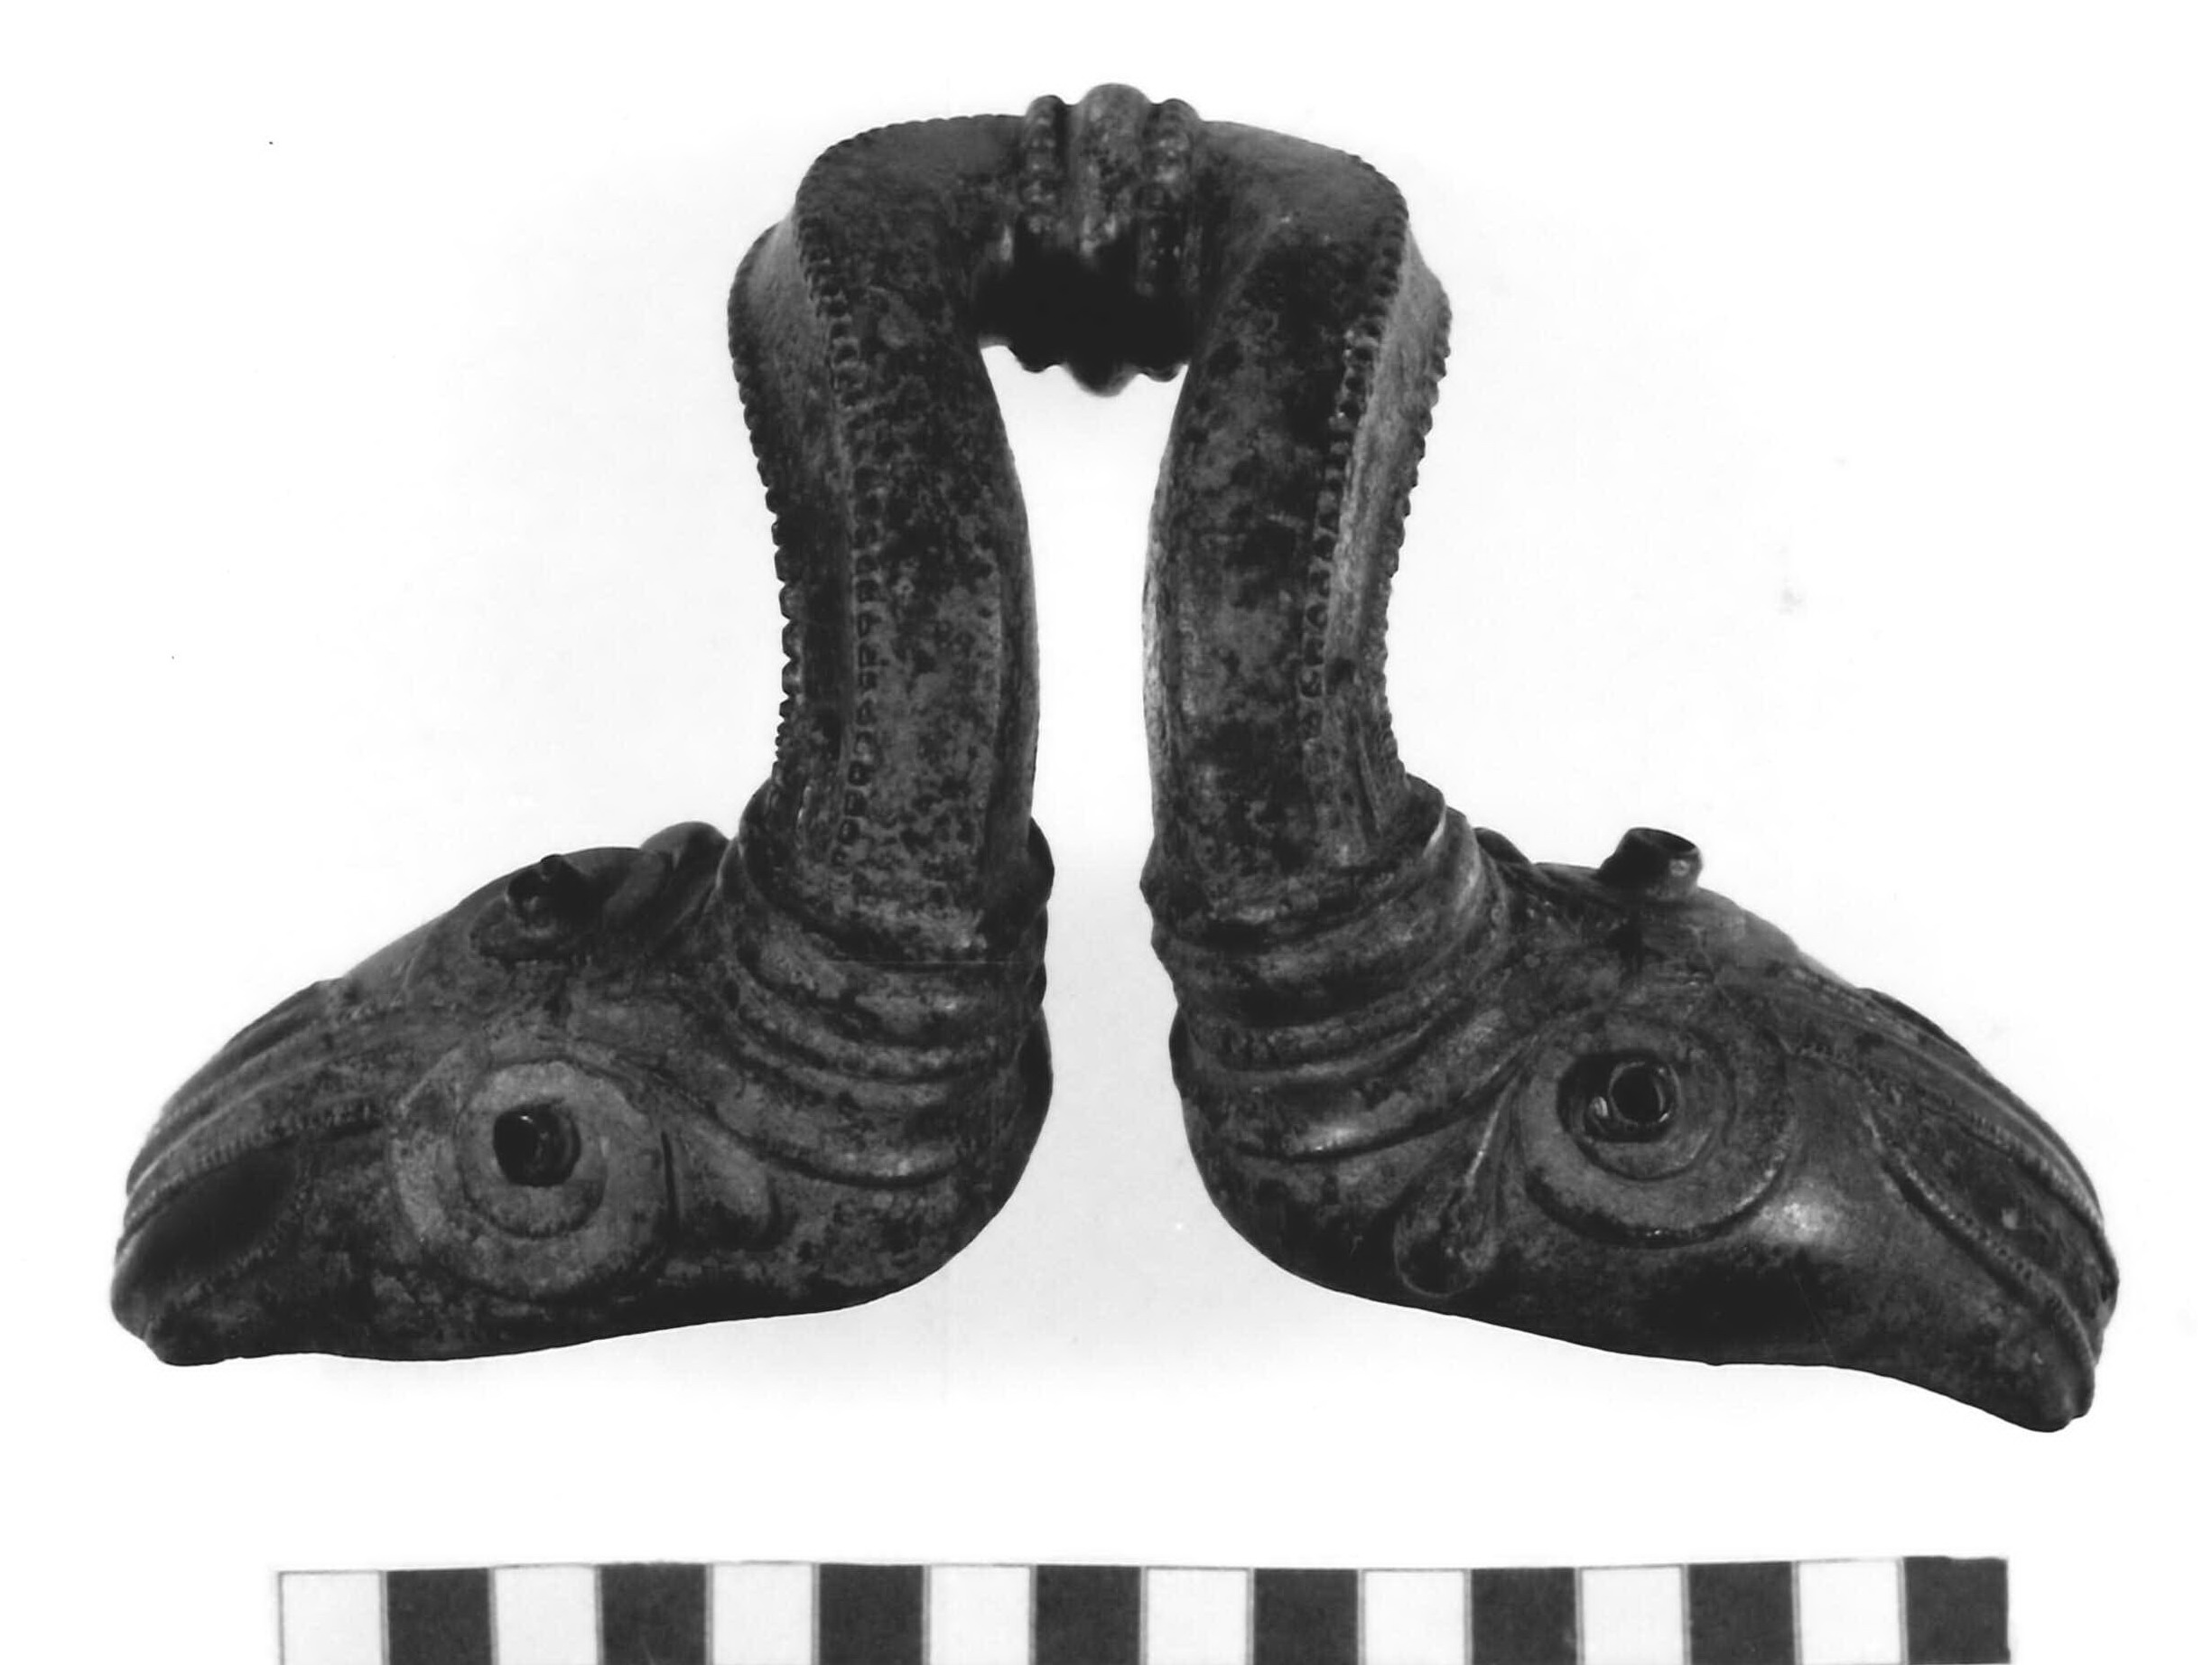 ansa di stamnos - botteghe celtiche dell'Italia centrale (metà sec. IV a.C)